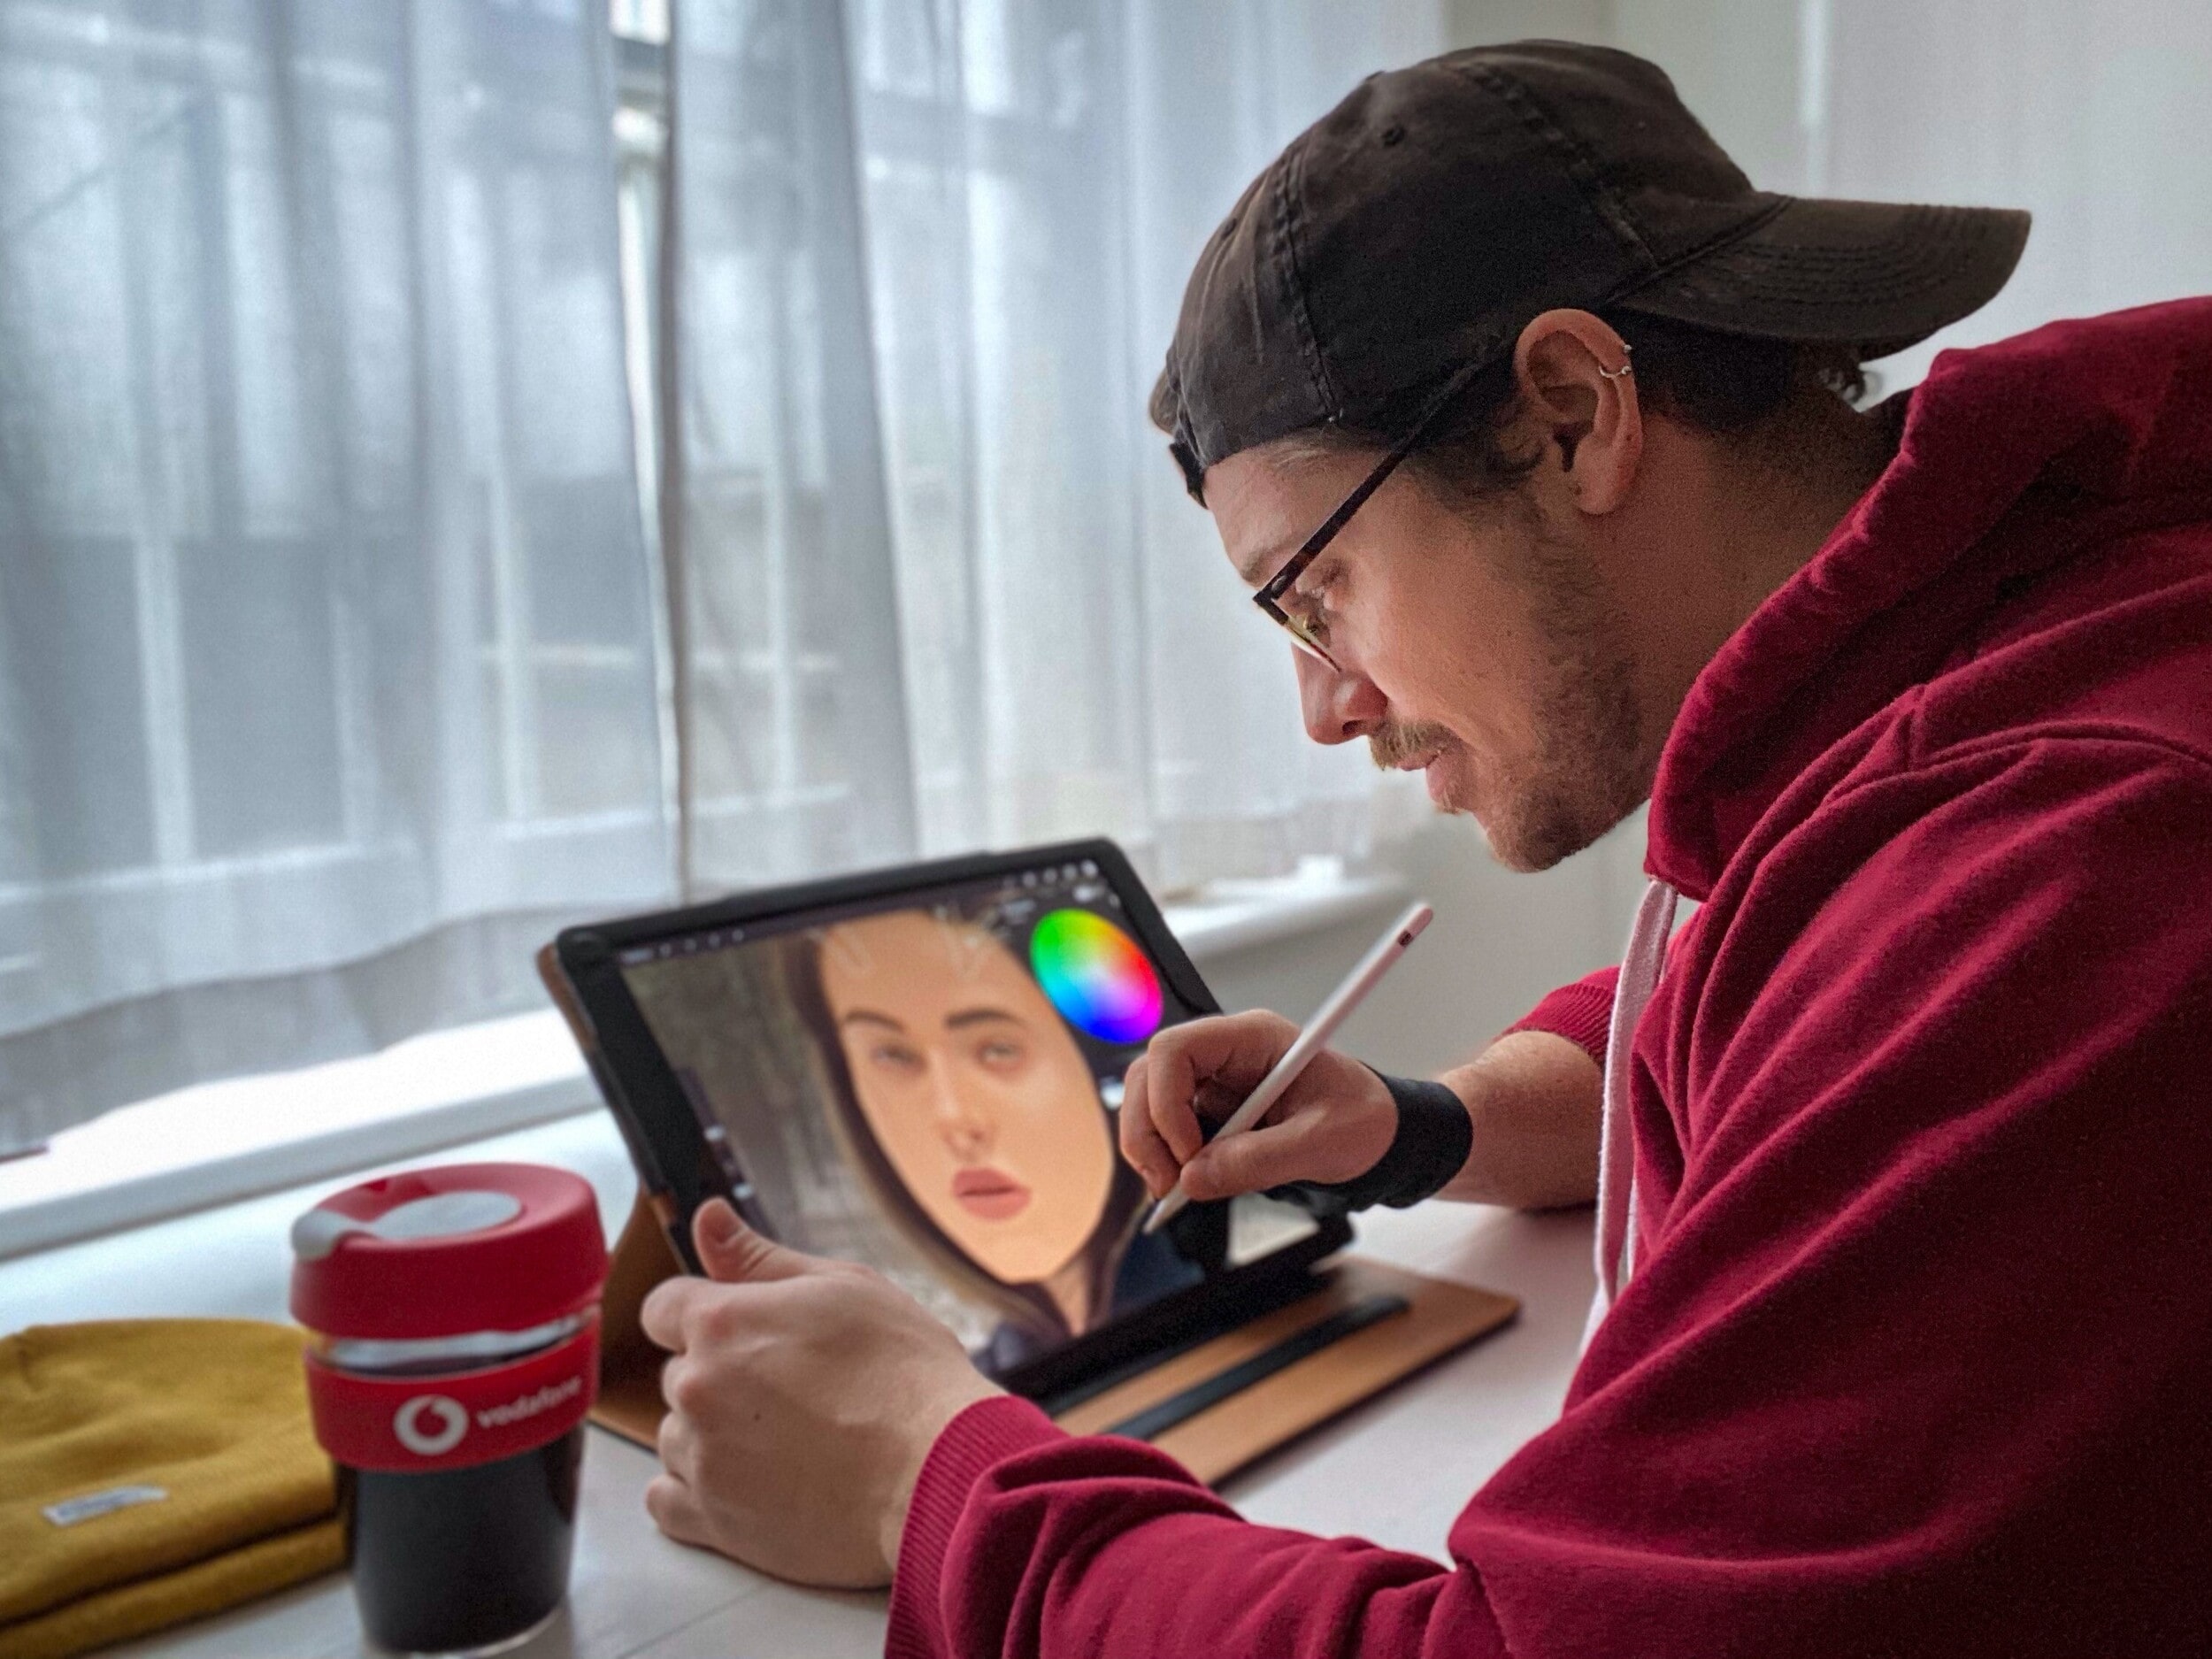 A man editing a photo on an ipad